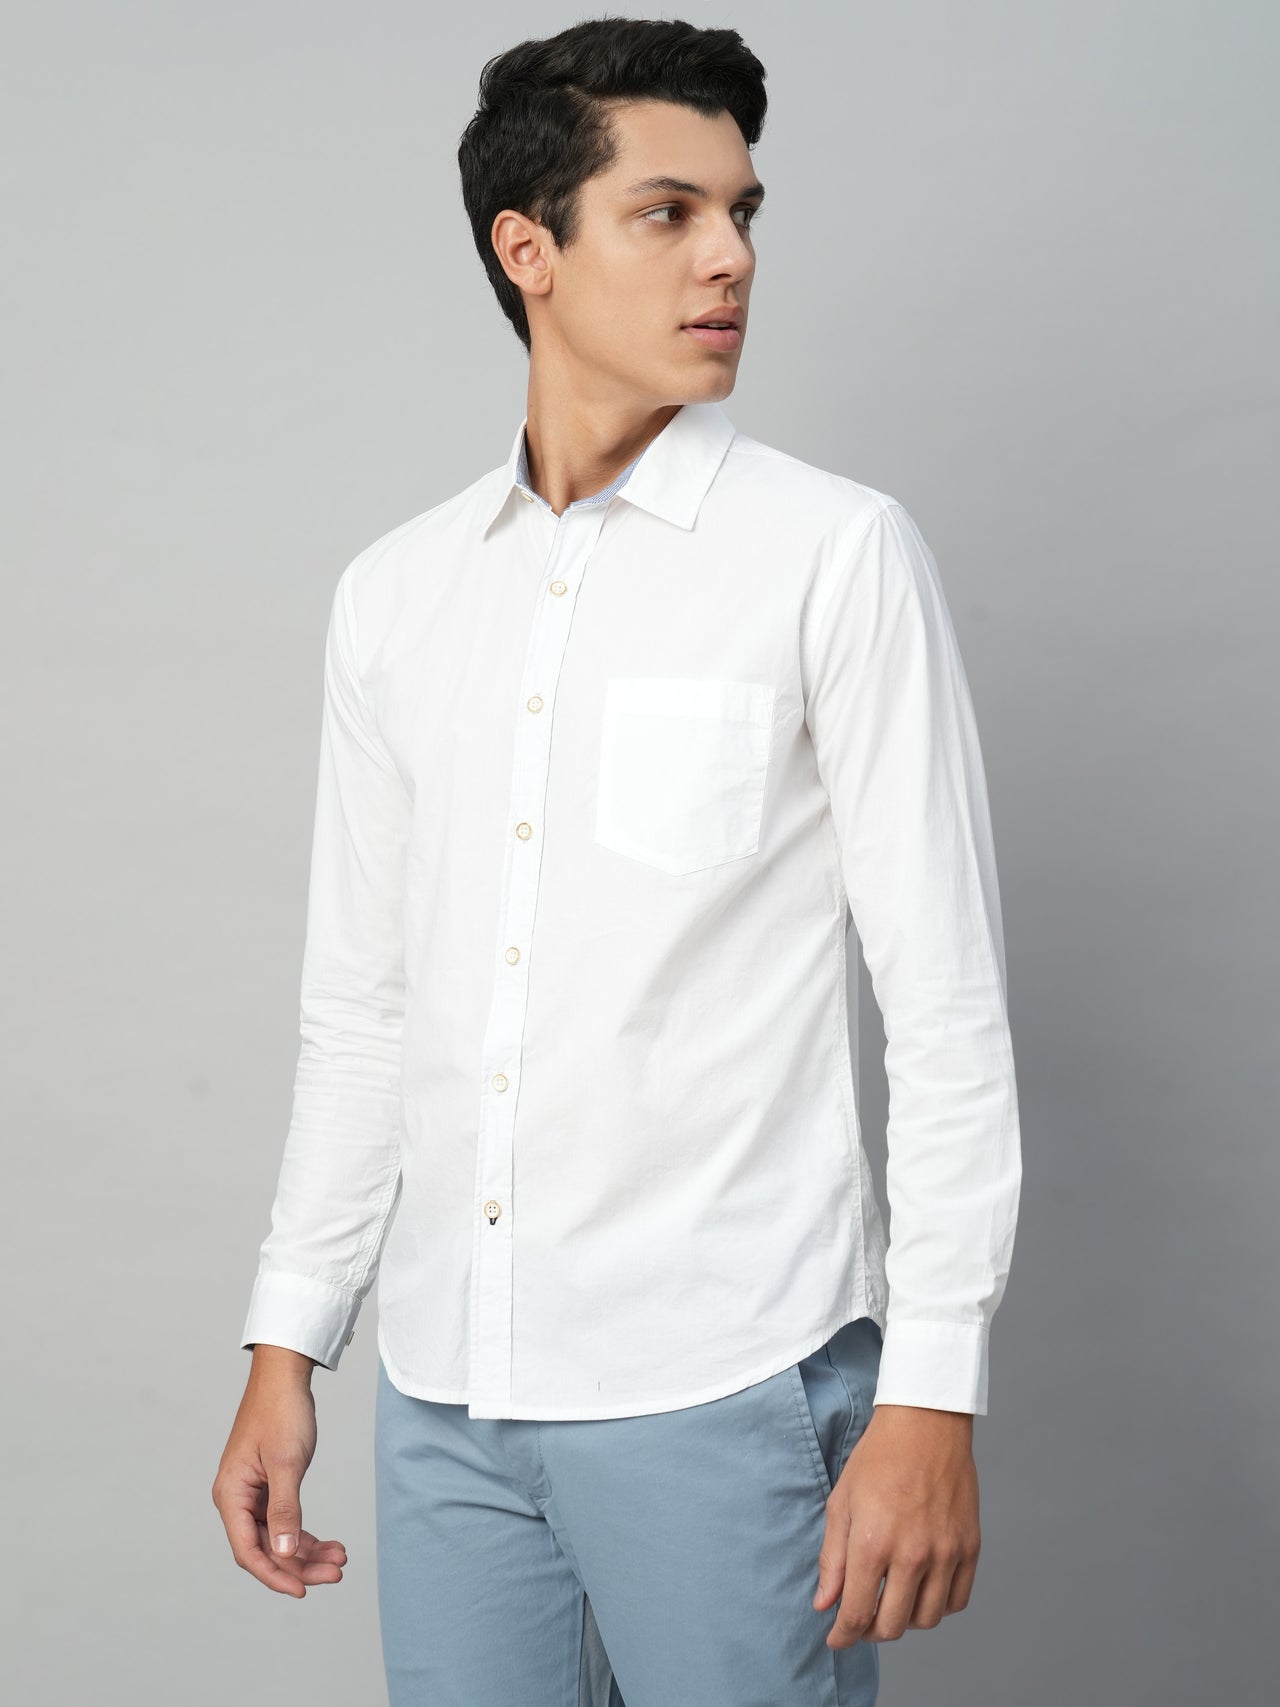 Men's White Cotton Regular Fit Shirts